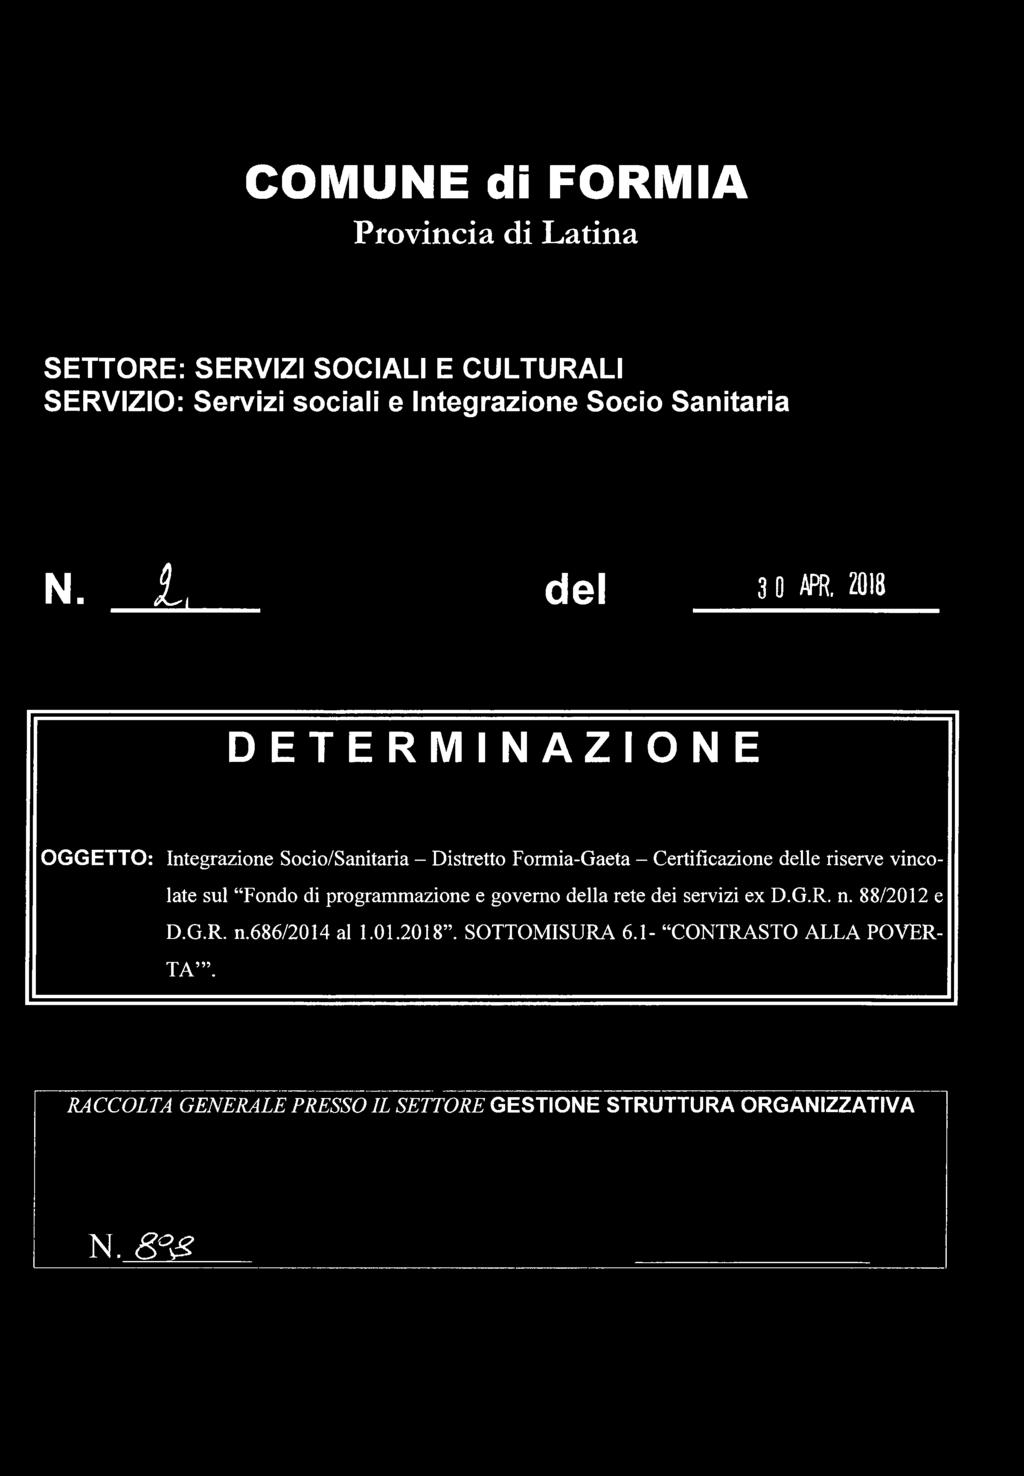 2Q18 DETERMINAZIONE OGGETTO: Integrazione Socio/Sanitaria - Distretto Formia-Gaeta - Certificazione delle riserve vincolate